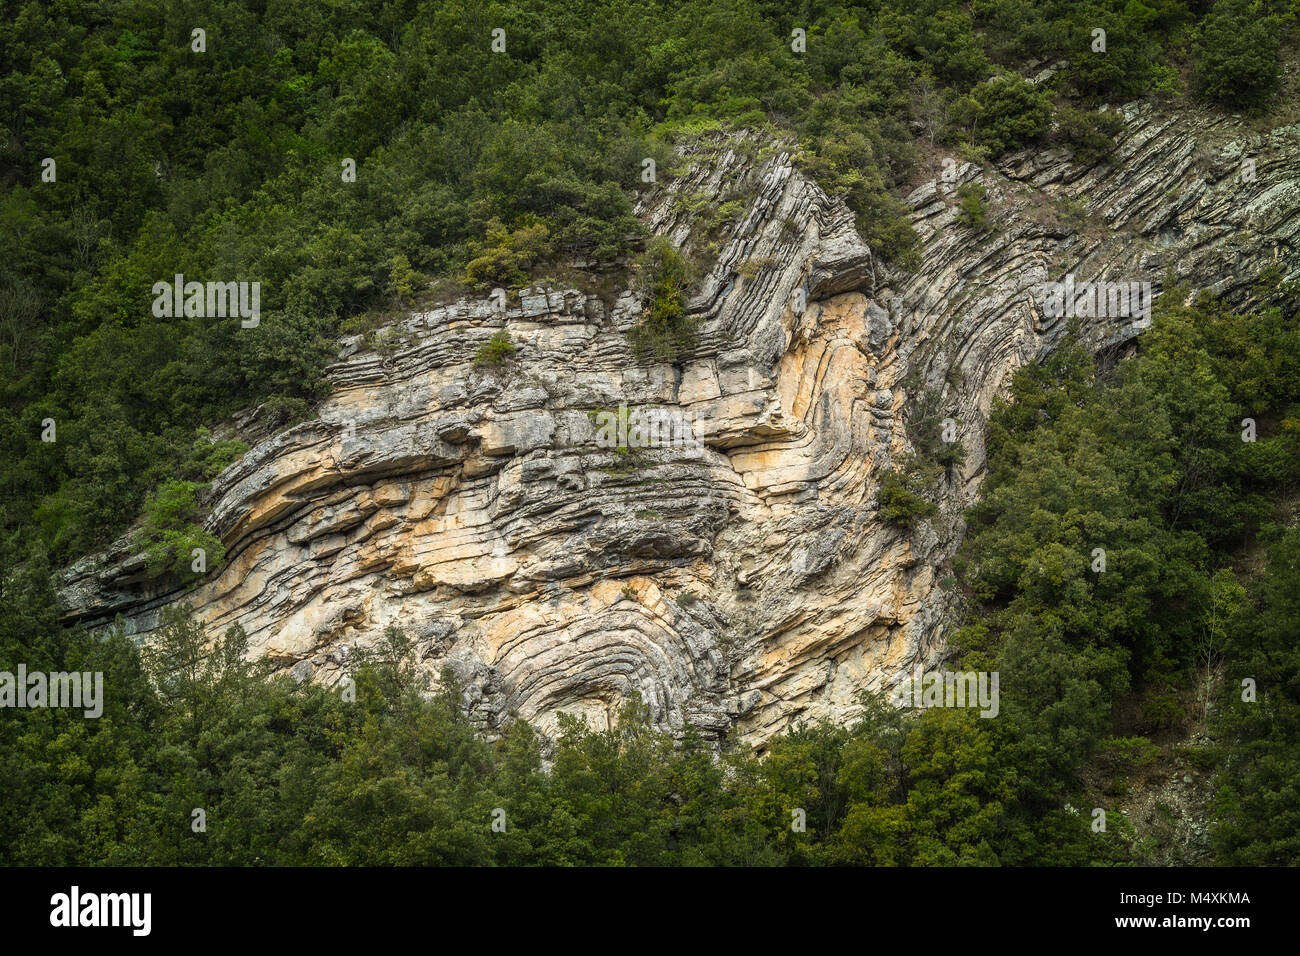 Schichten von Sandsteinablagerungen, die durch geologische Kräfte deformiert wurden. Nationalpark Gran Sasso und Monti della Laga, Abruzzen, Italien, Europa Stockfoto